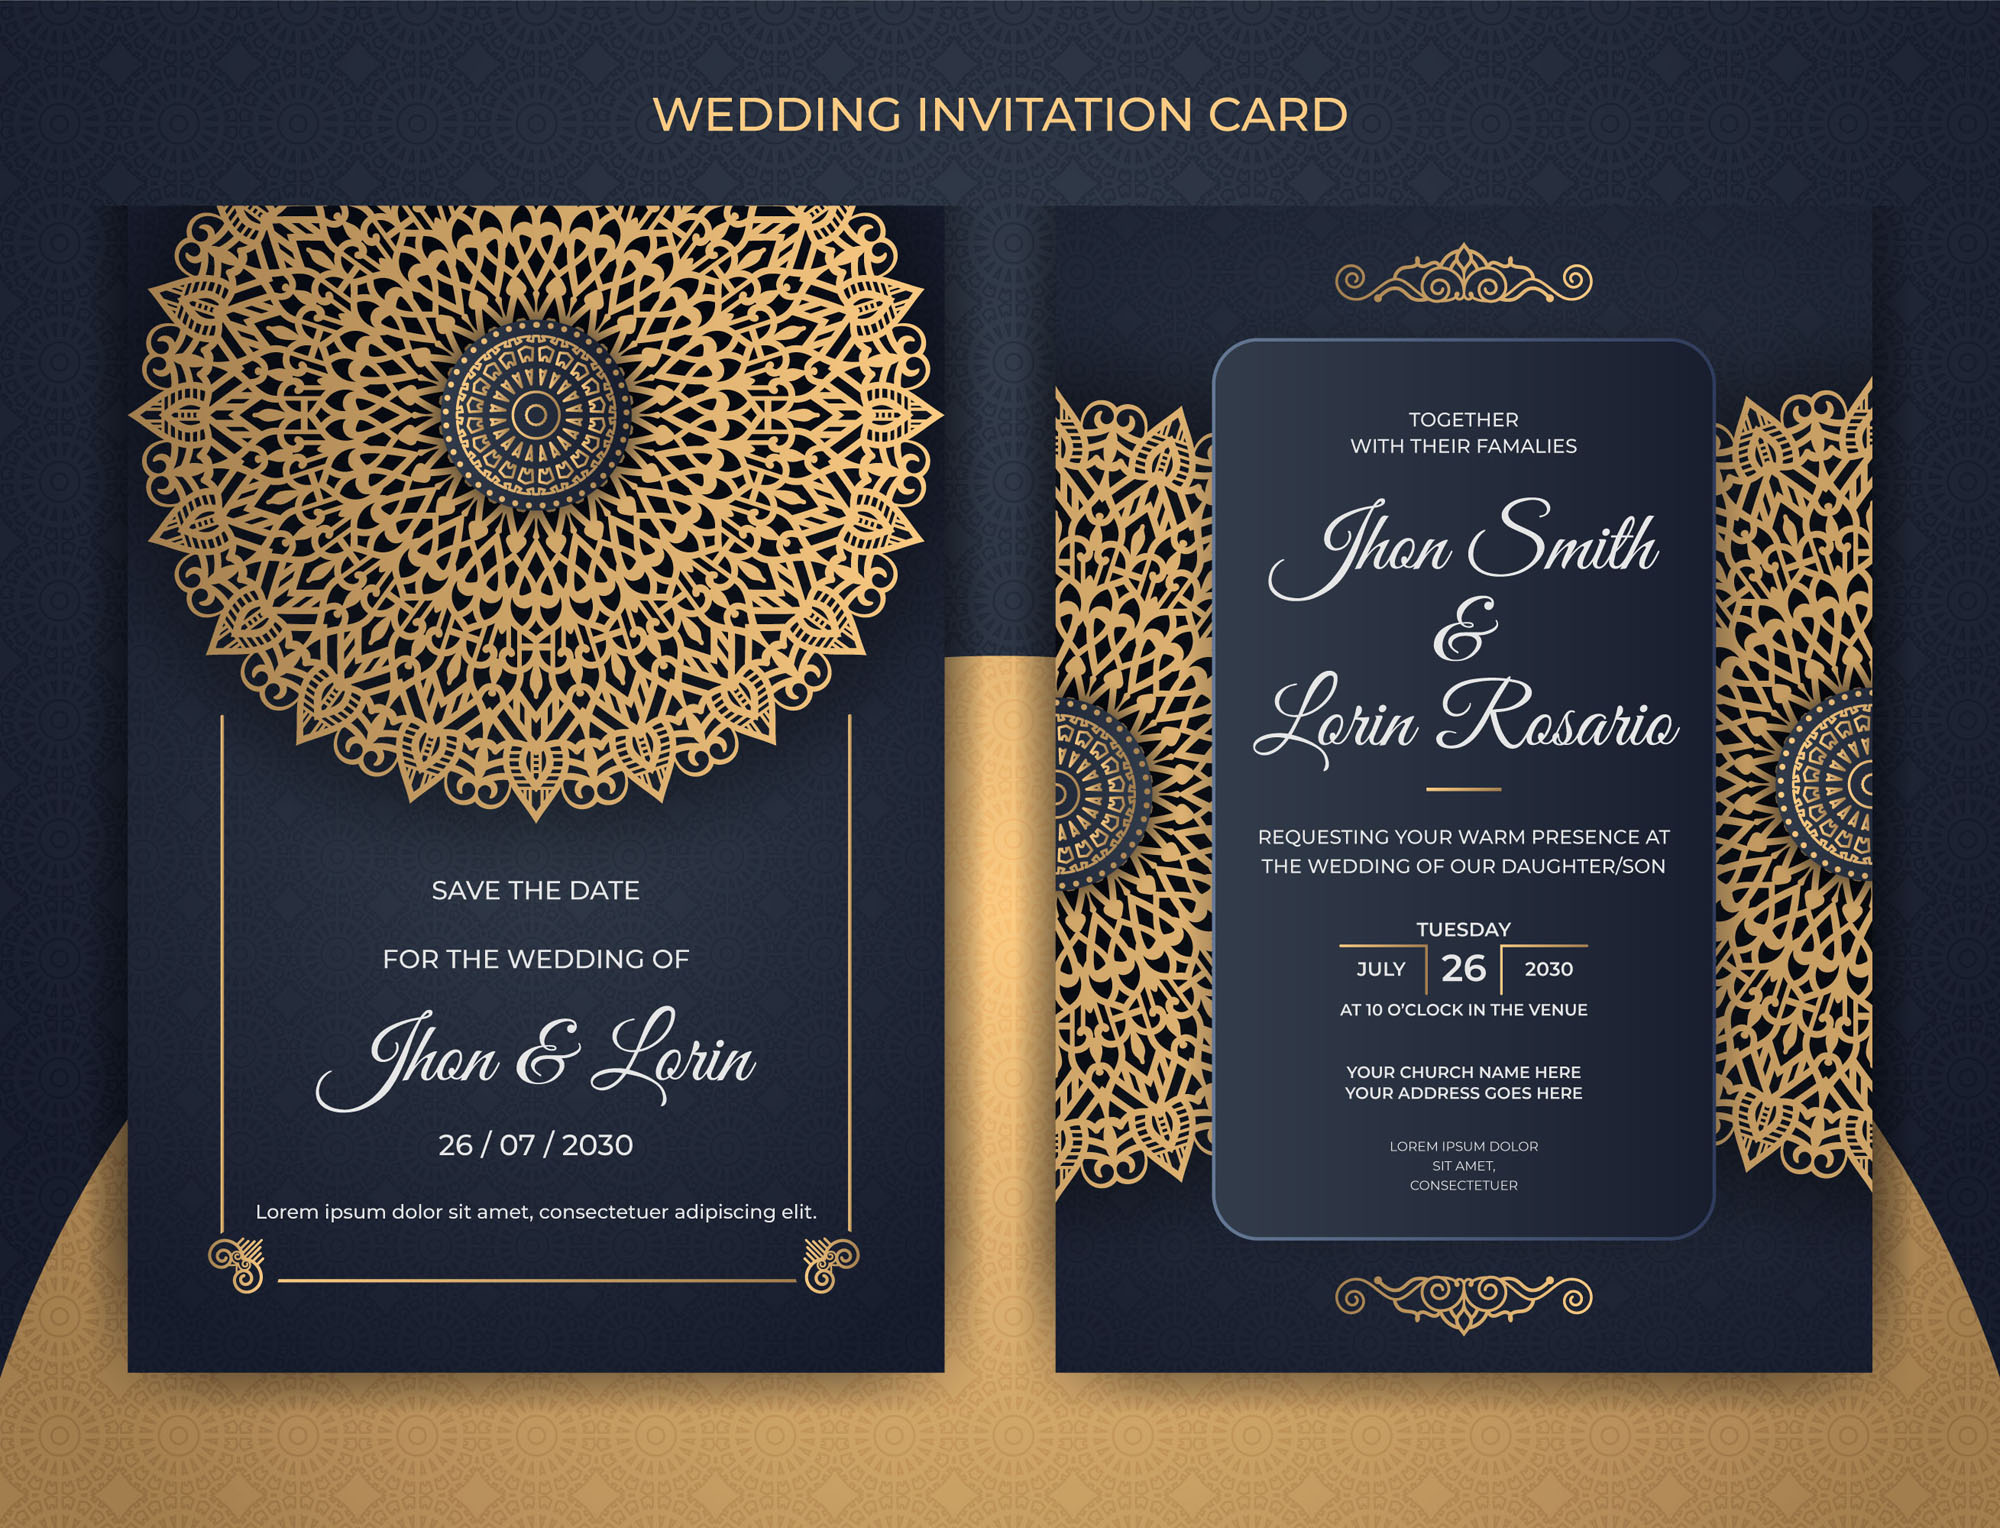 4 In One Royal Luxury Wedding Invitation Card Only In $7, elegant wedding card.